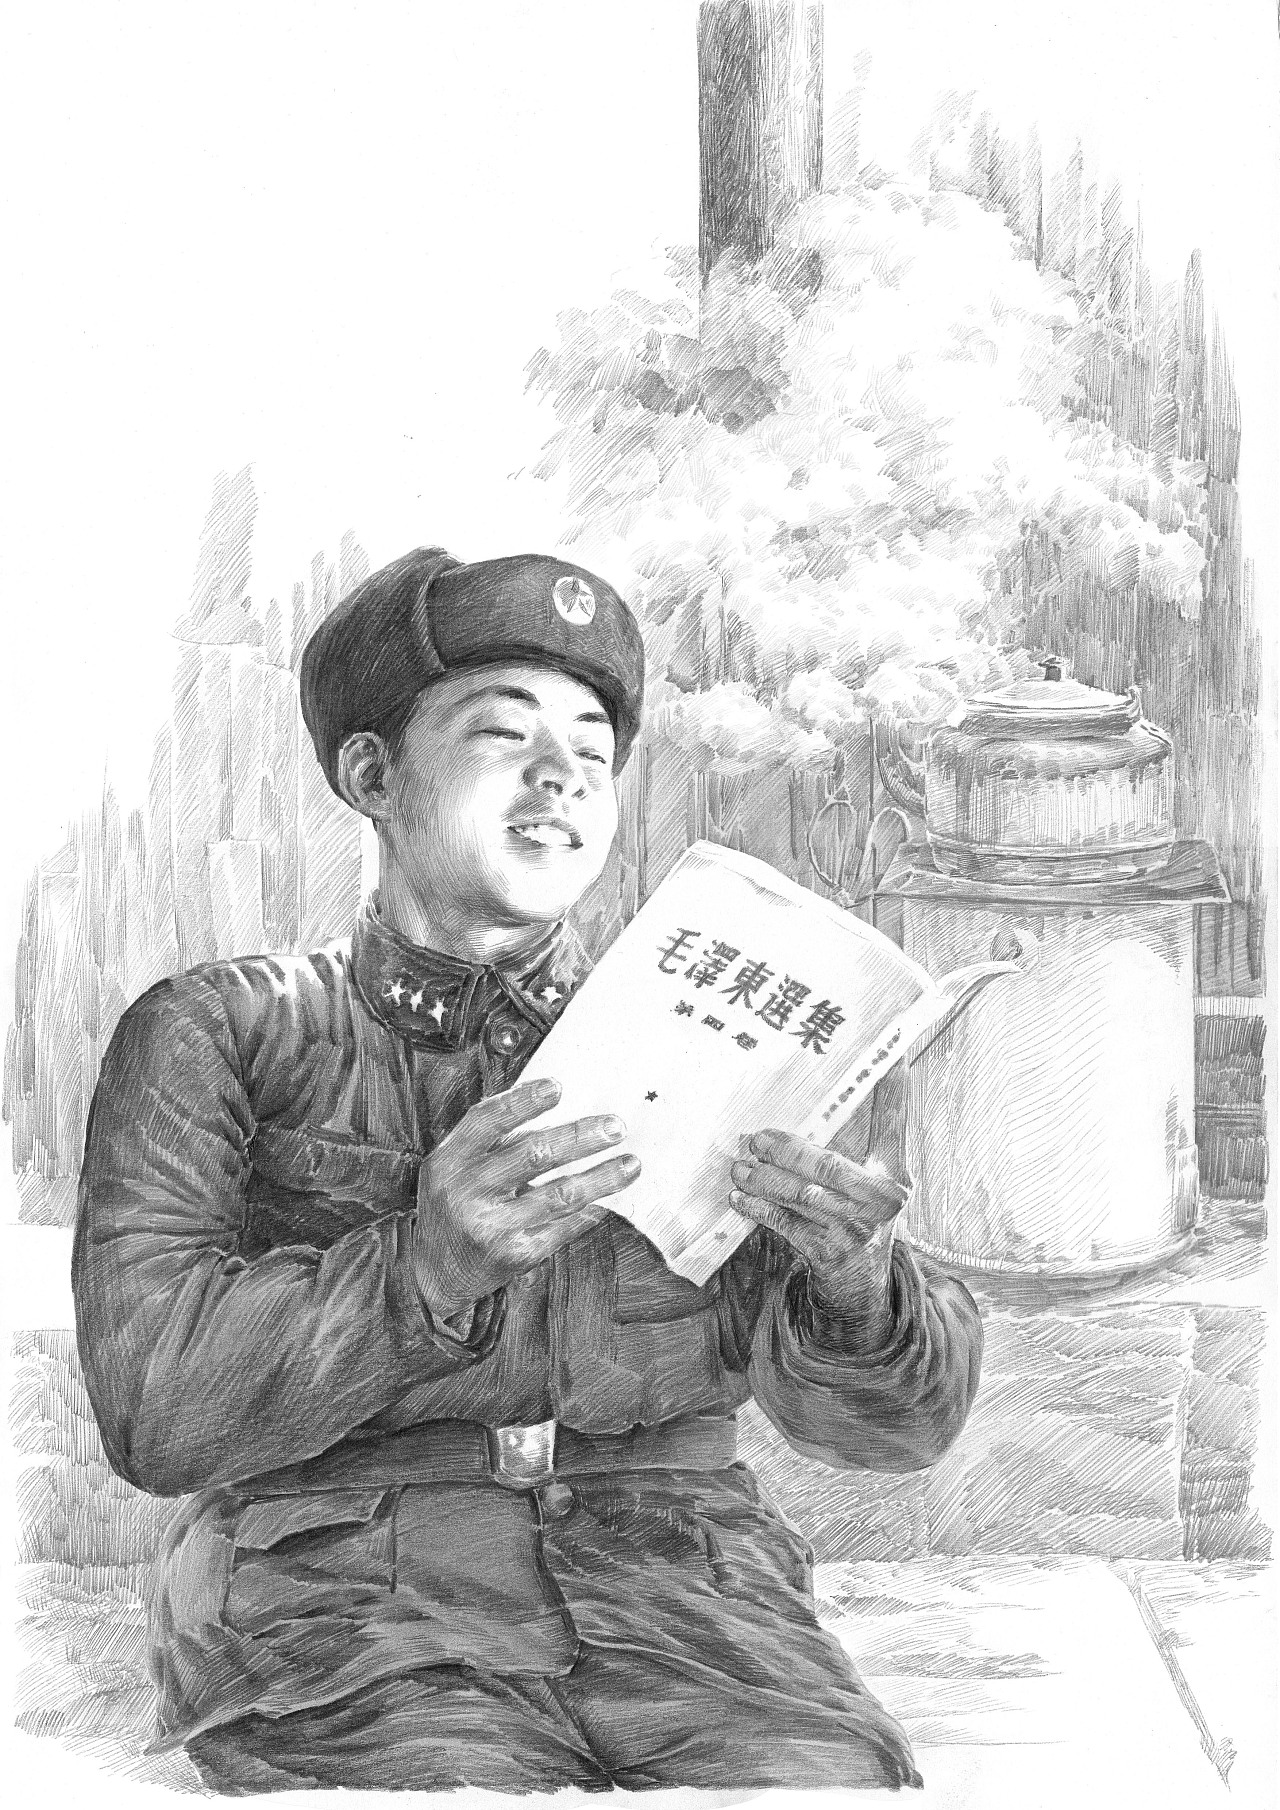 1978年人物素描肖像画共产主义战士最美奋斗者英雄雷锋同志经典老素描画缅怀过去-价格:1900元-au36054334-素描/速写 -加价-7788收藏__收藏热线